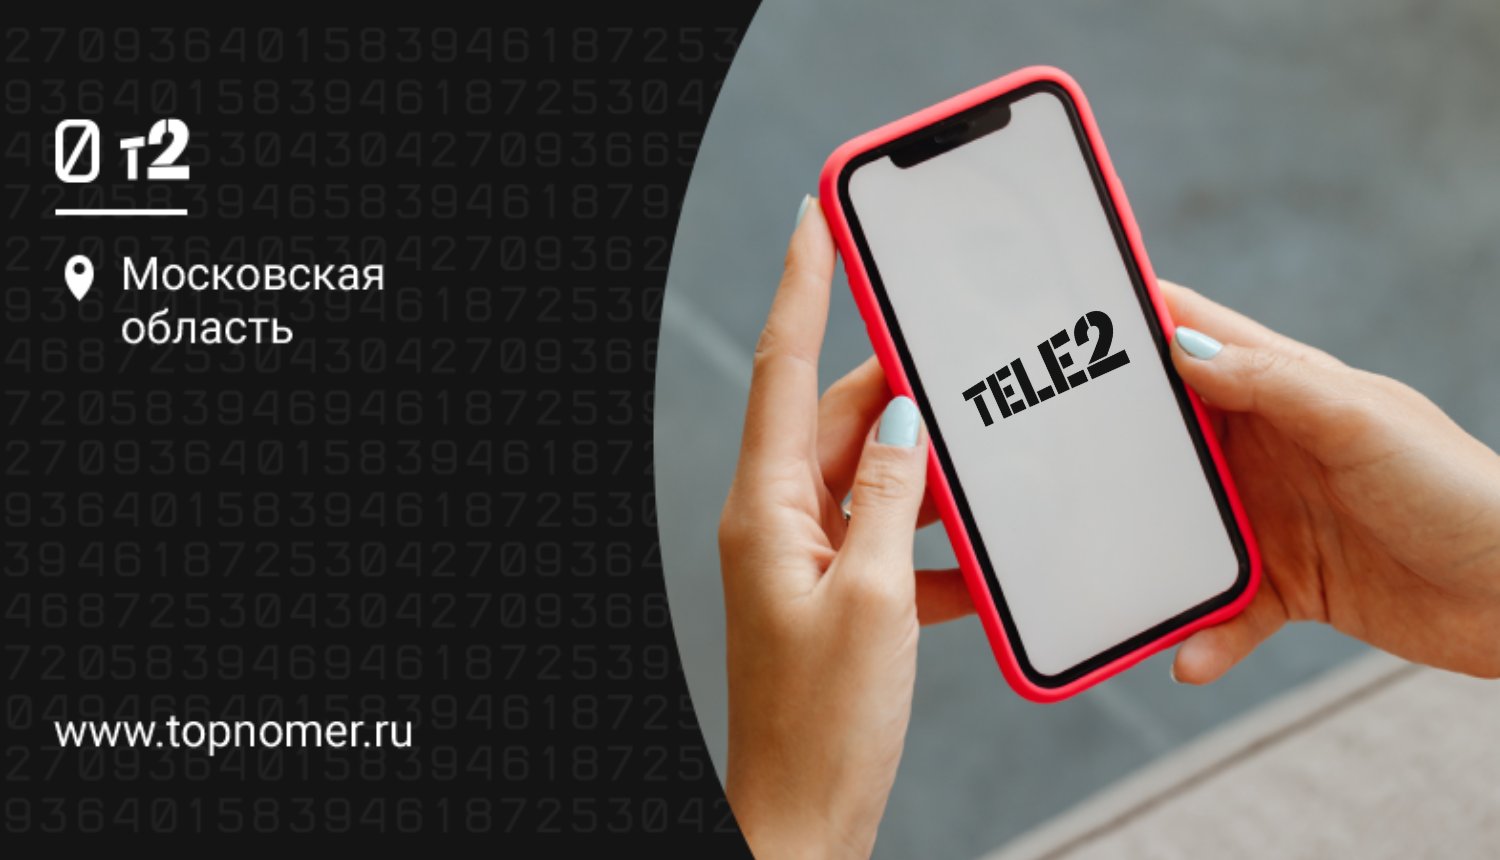 Мобильное приложение "Мой Tele2": полное описание функционала